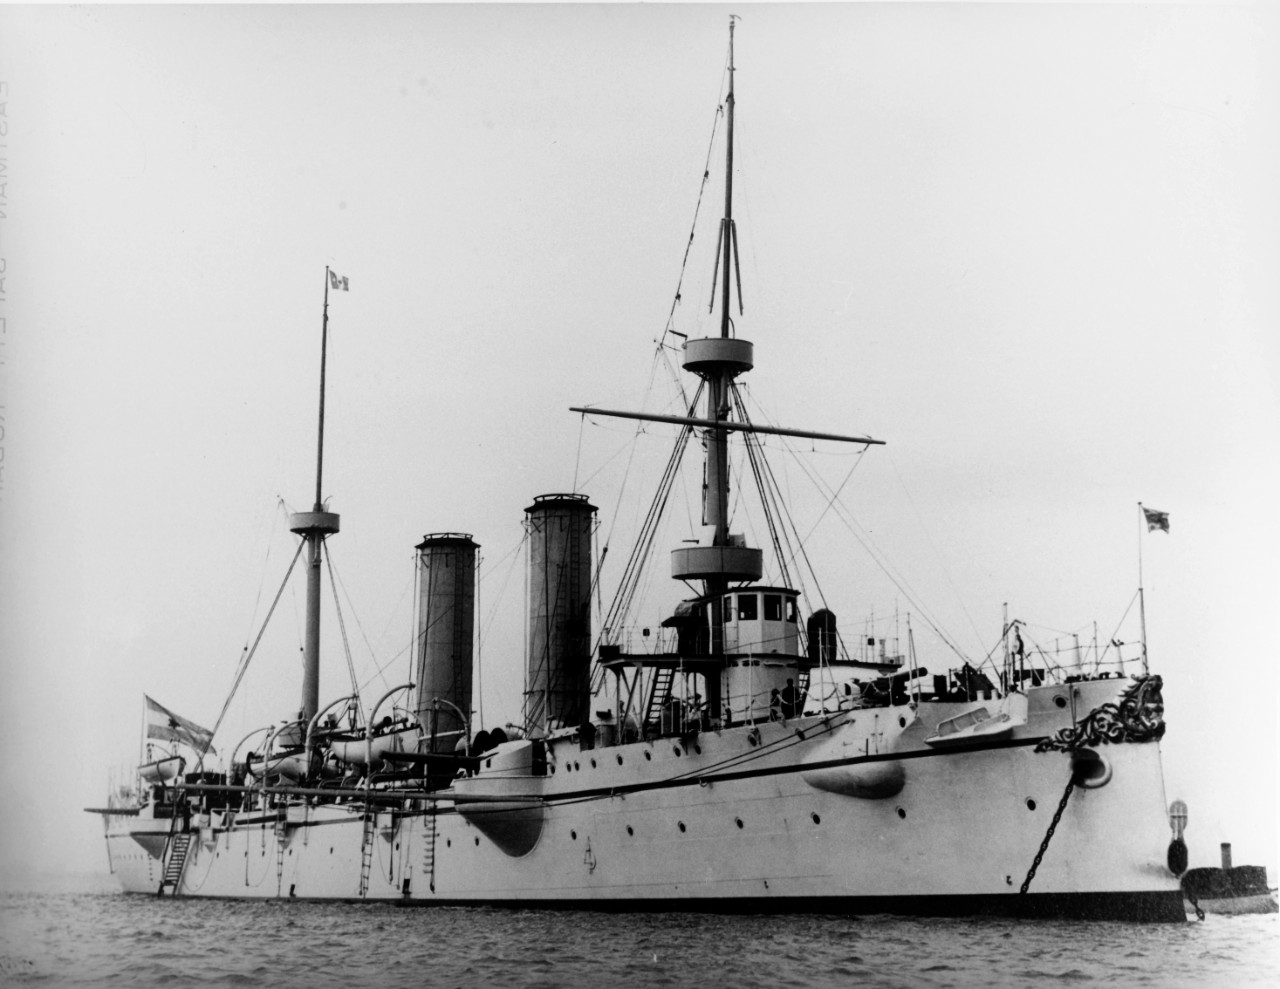 NUEVE DE JULIO (Argentine Protected Cruiser, 1892-1930)